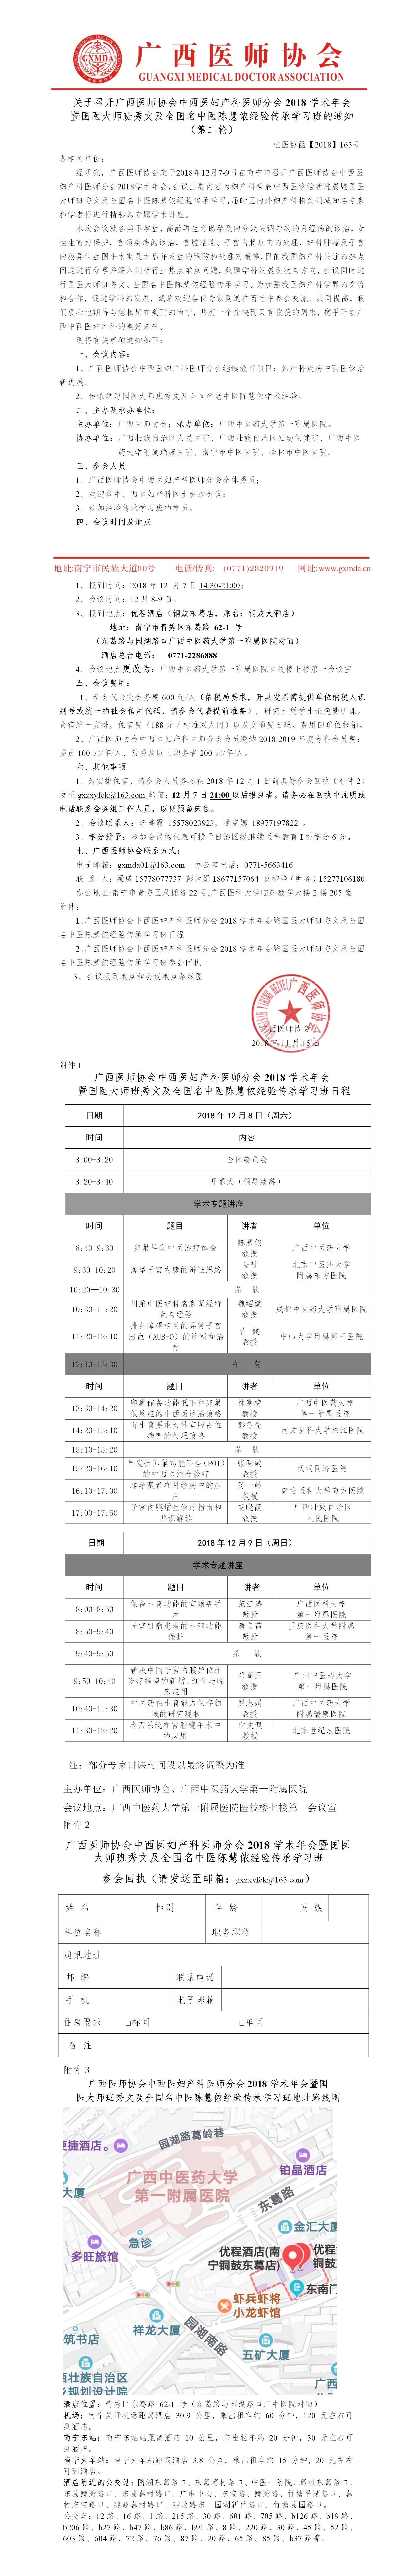 【2018】163号 关于召开广西医师协会中西医妇产科医师分会2018学术年会的通知（第二轮）.jpg